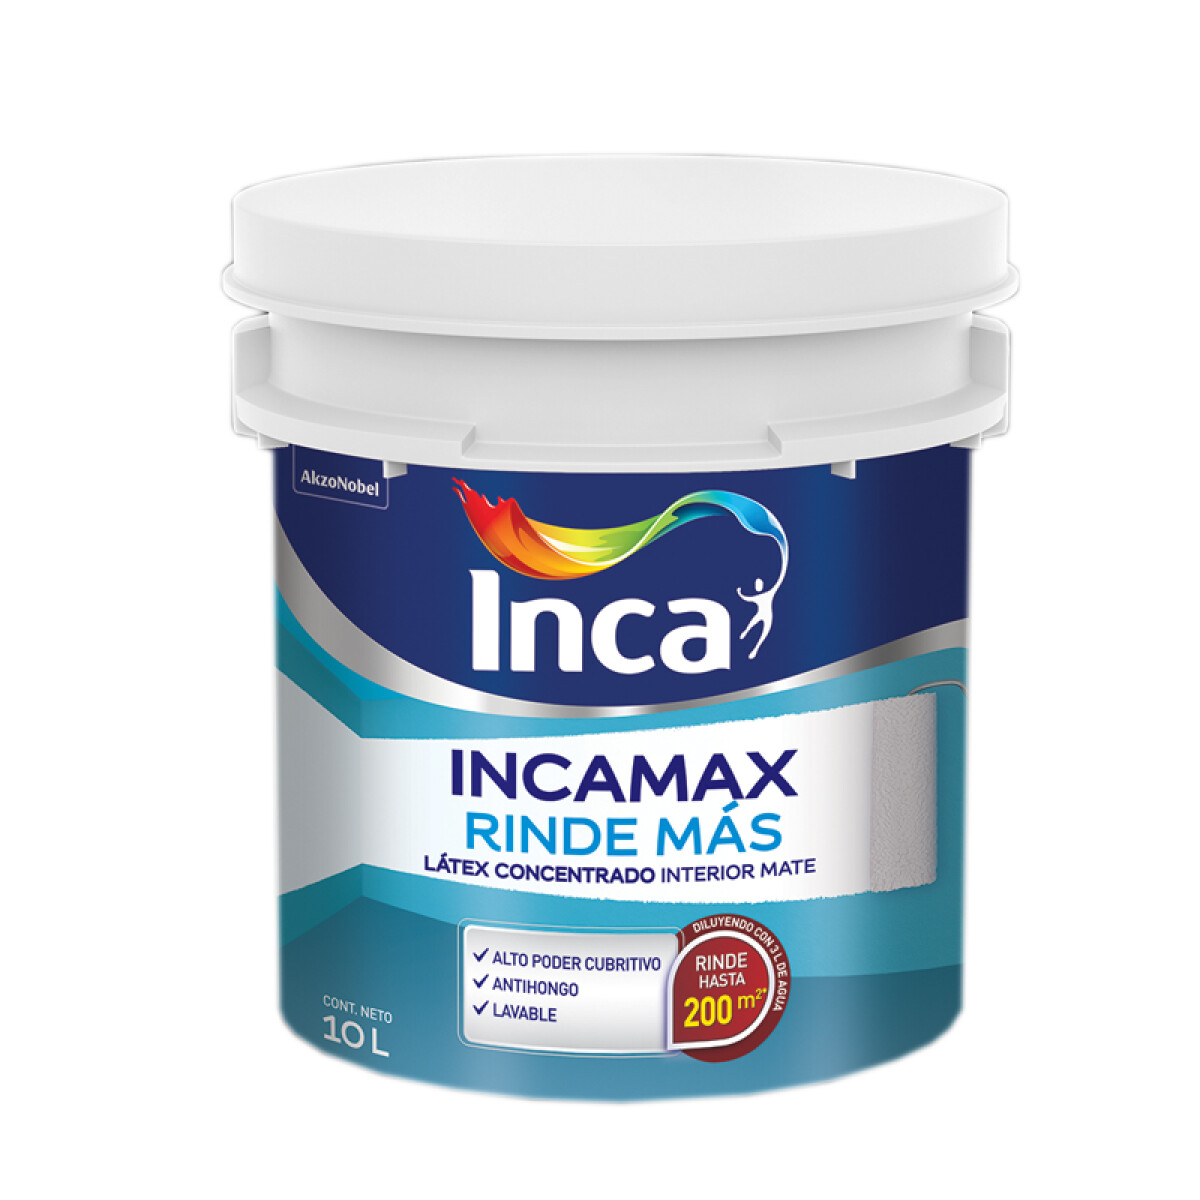 INCAMAX RINDE MAS BLANCO 10L INCA 